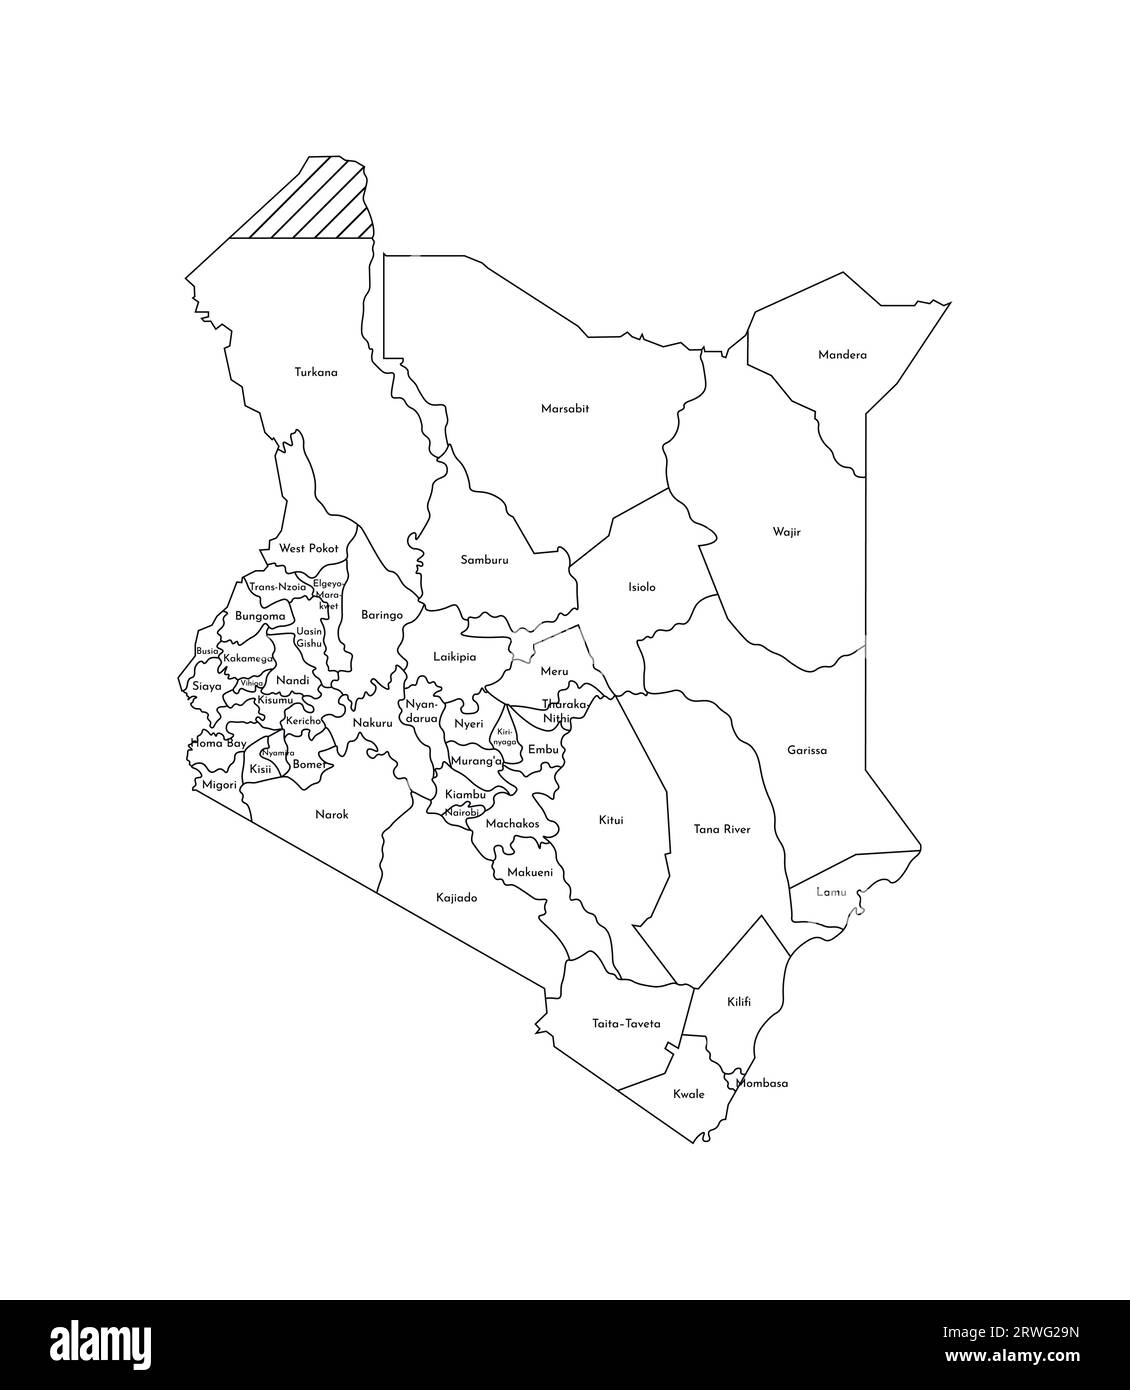 Vektorisolierte Darstellung einer vereinfachten Verwaltungskarte Kenias. Grenzen und Namen der Bezirke (Regionen). Silhouetten mit schwarzen Linien. Stock Vektor